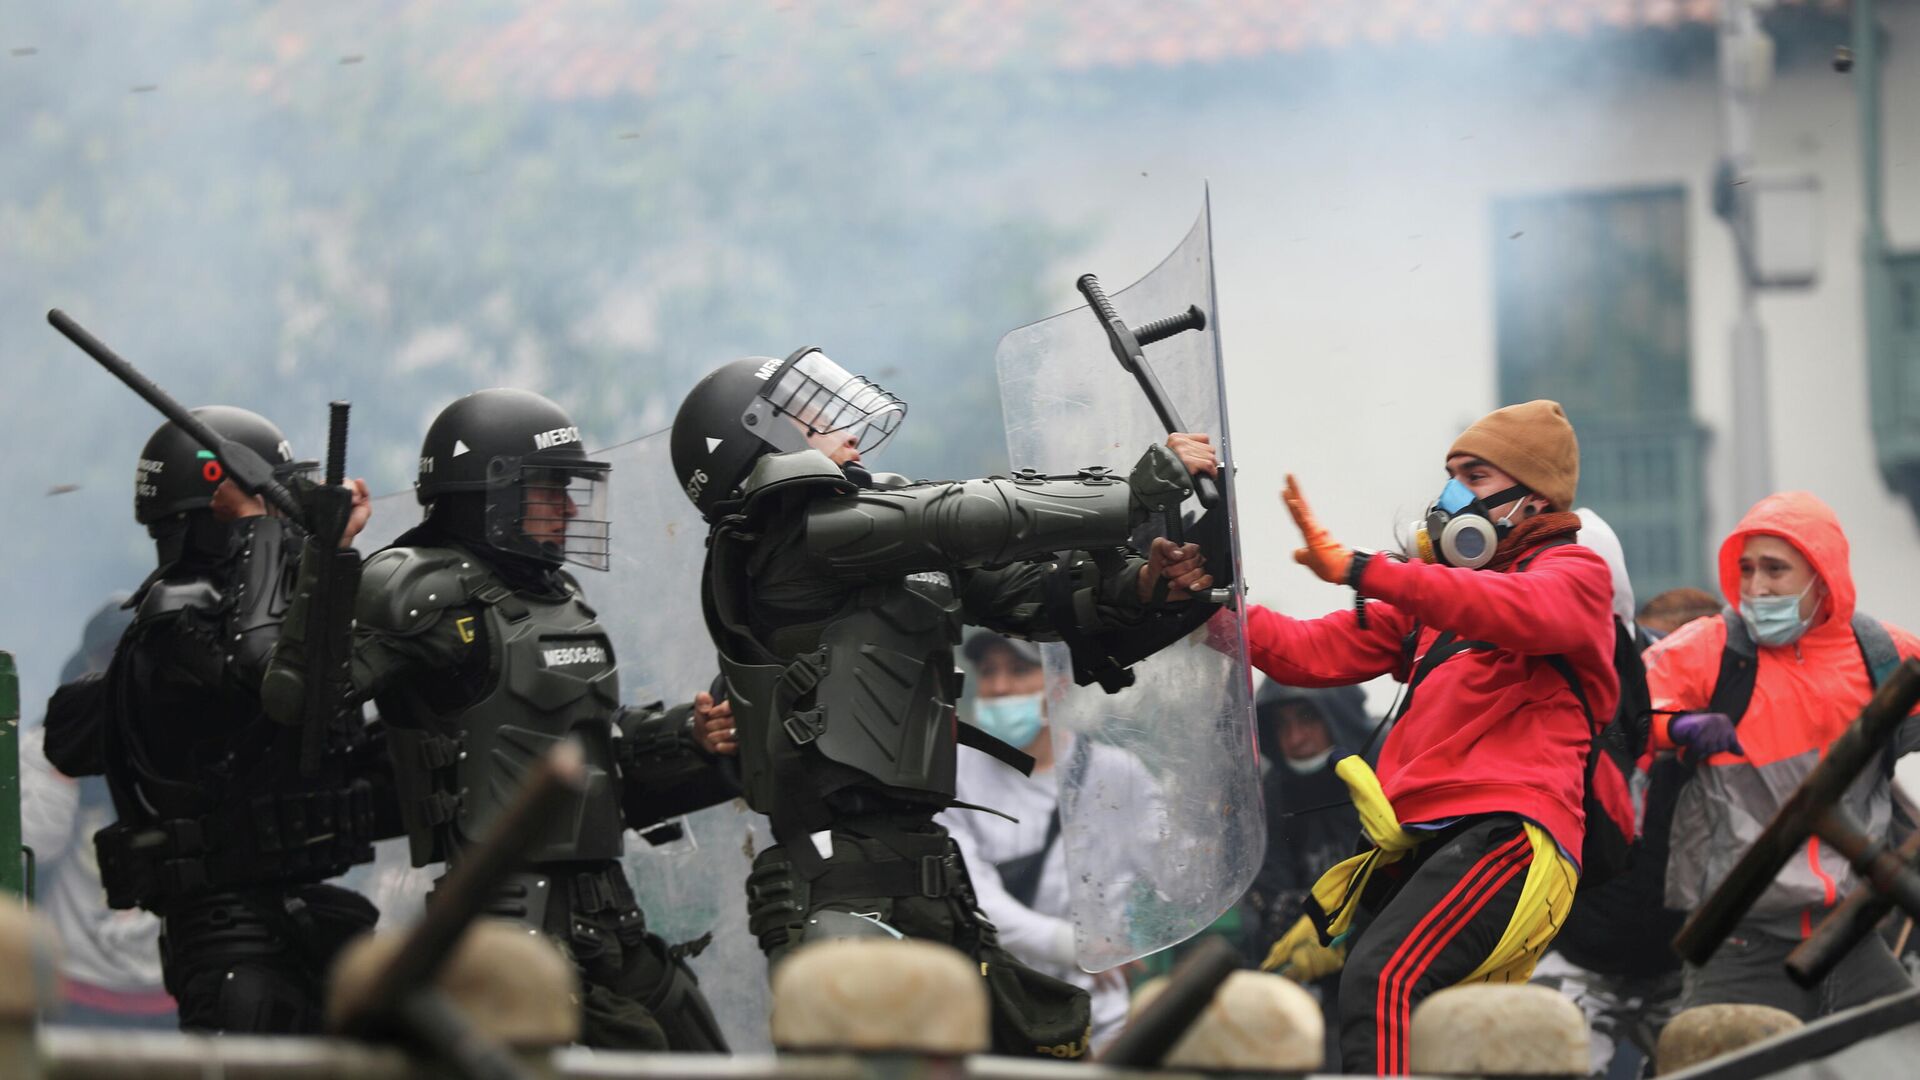 Столкновения демонстрантов с сотрудниками сил безопасности во время акции протеста против налоговой реформы правительства президента Ивана Дуке в Боготе, Колумбия. 28 апреля 2021 года - РИА Новости, 1920, 29.05.2021